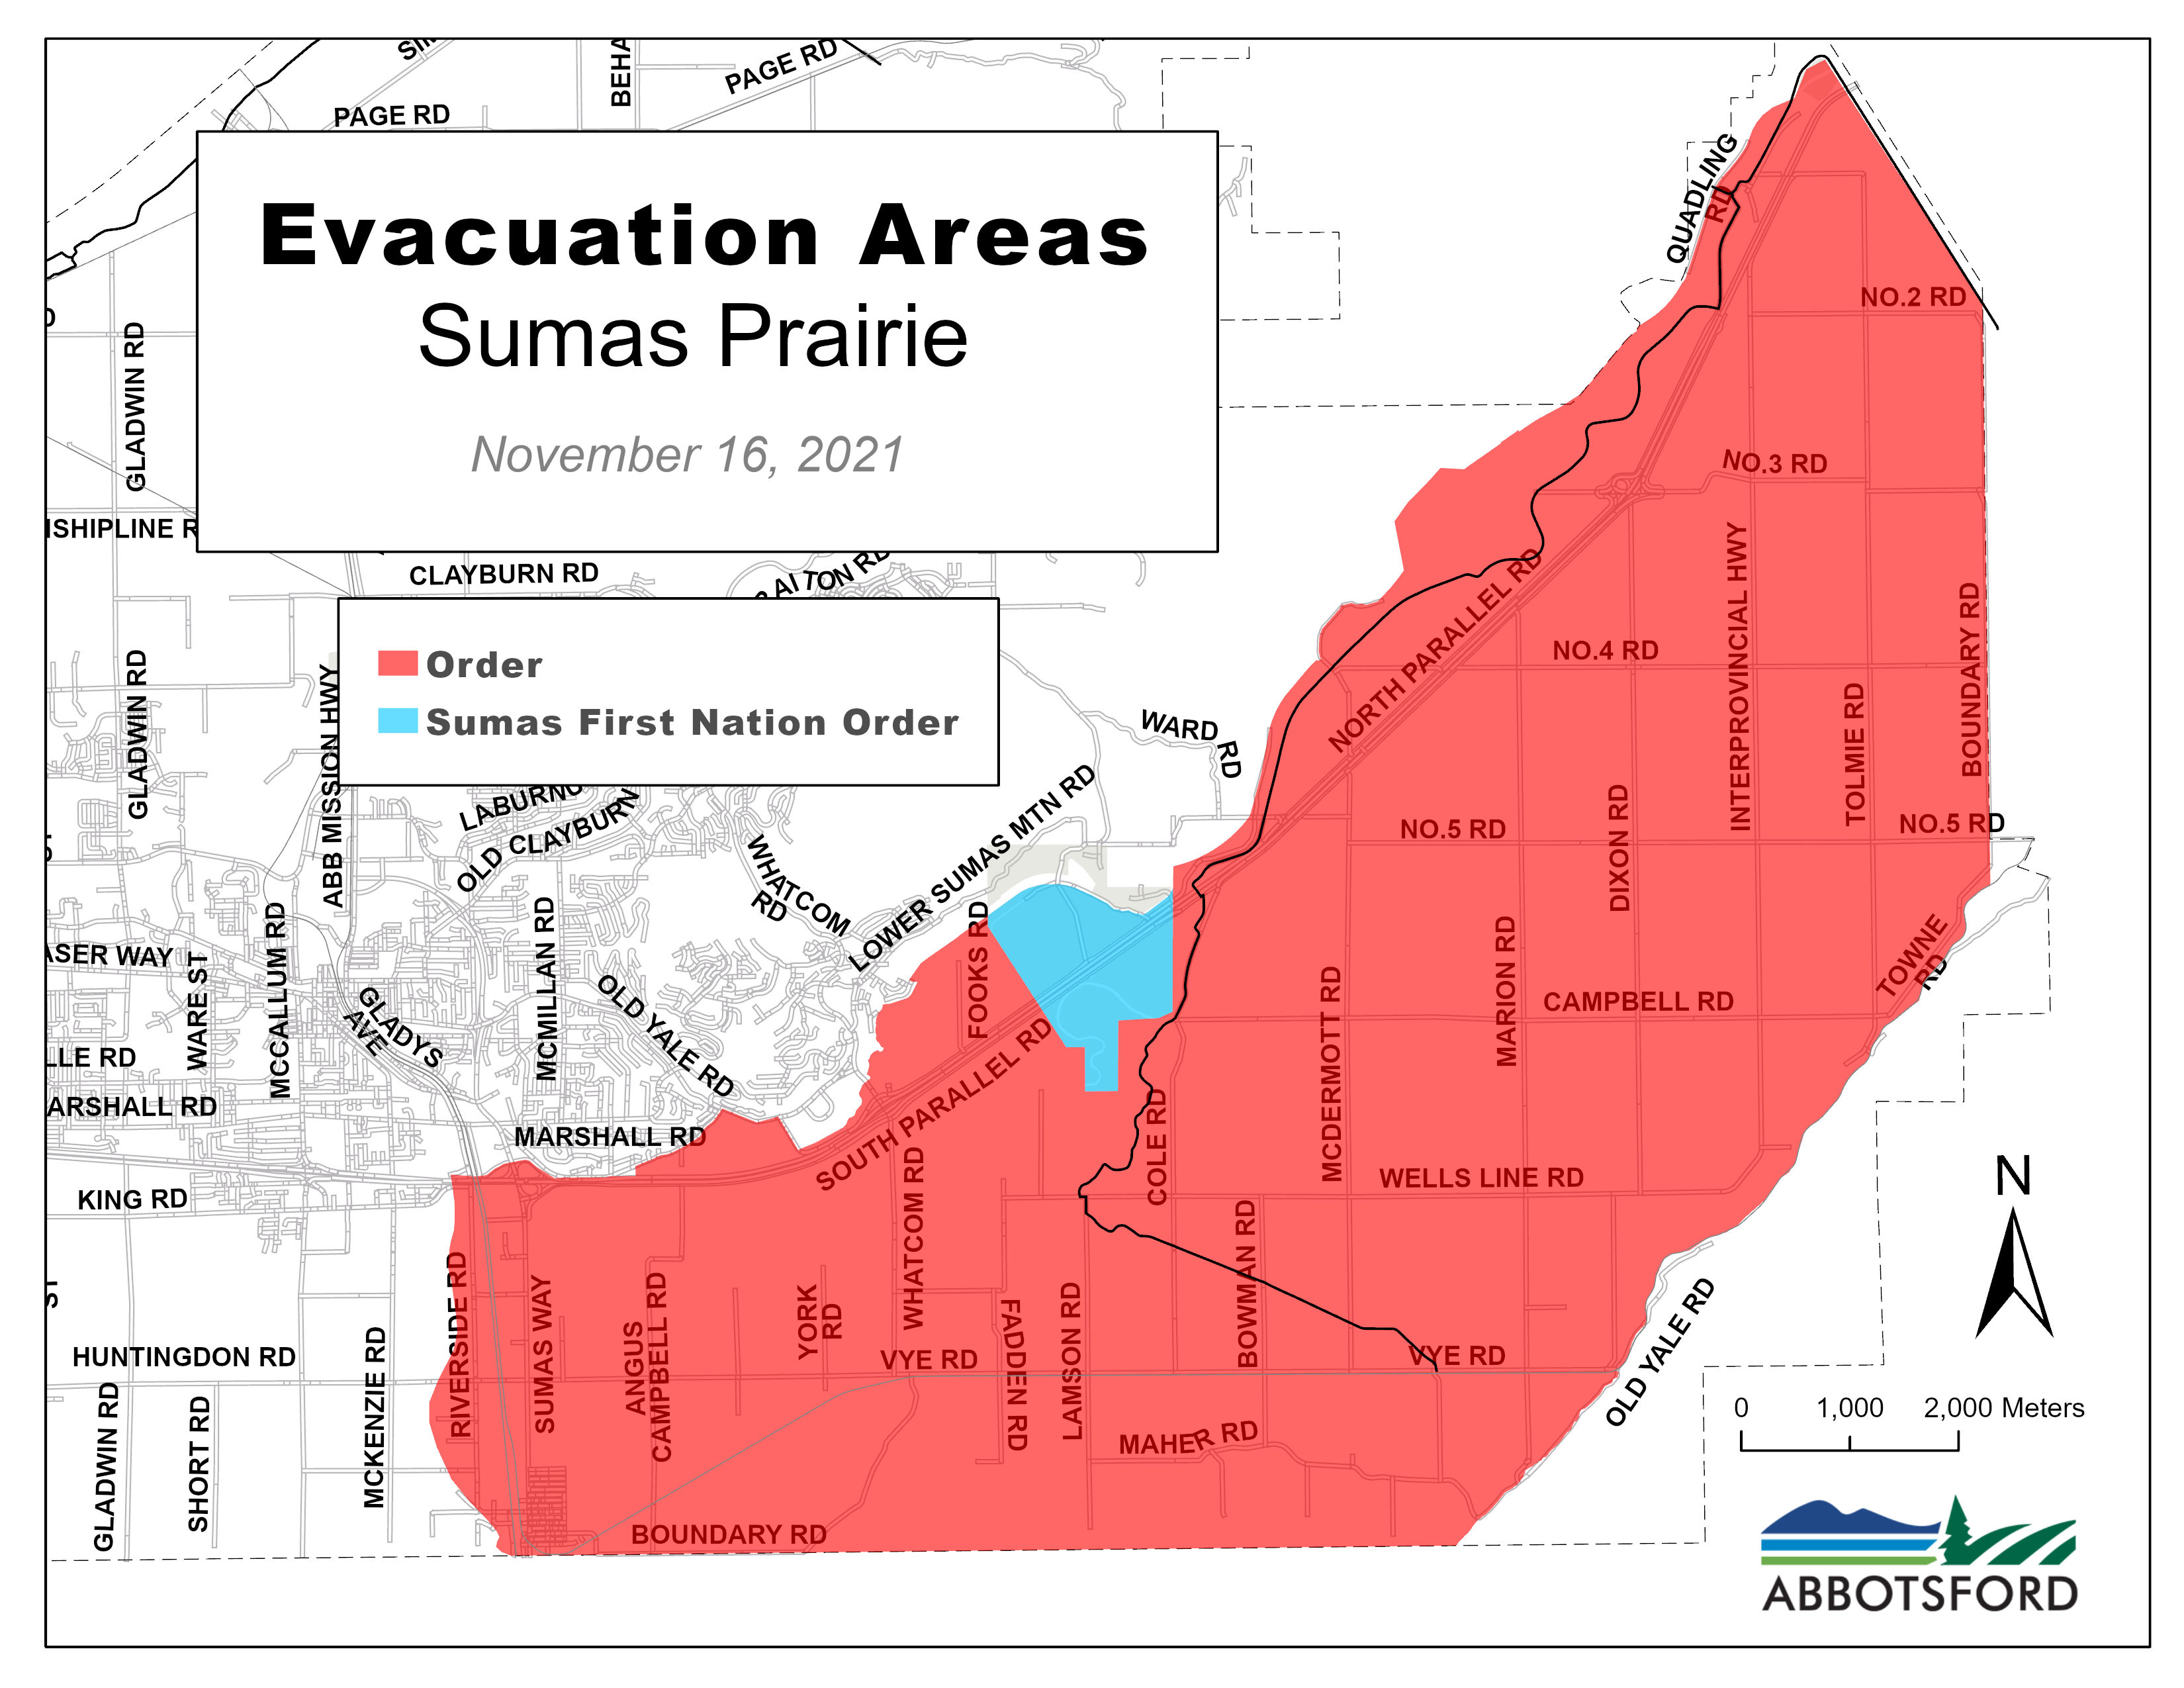 Image of Evacuated Area in Sumas Prairie